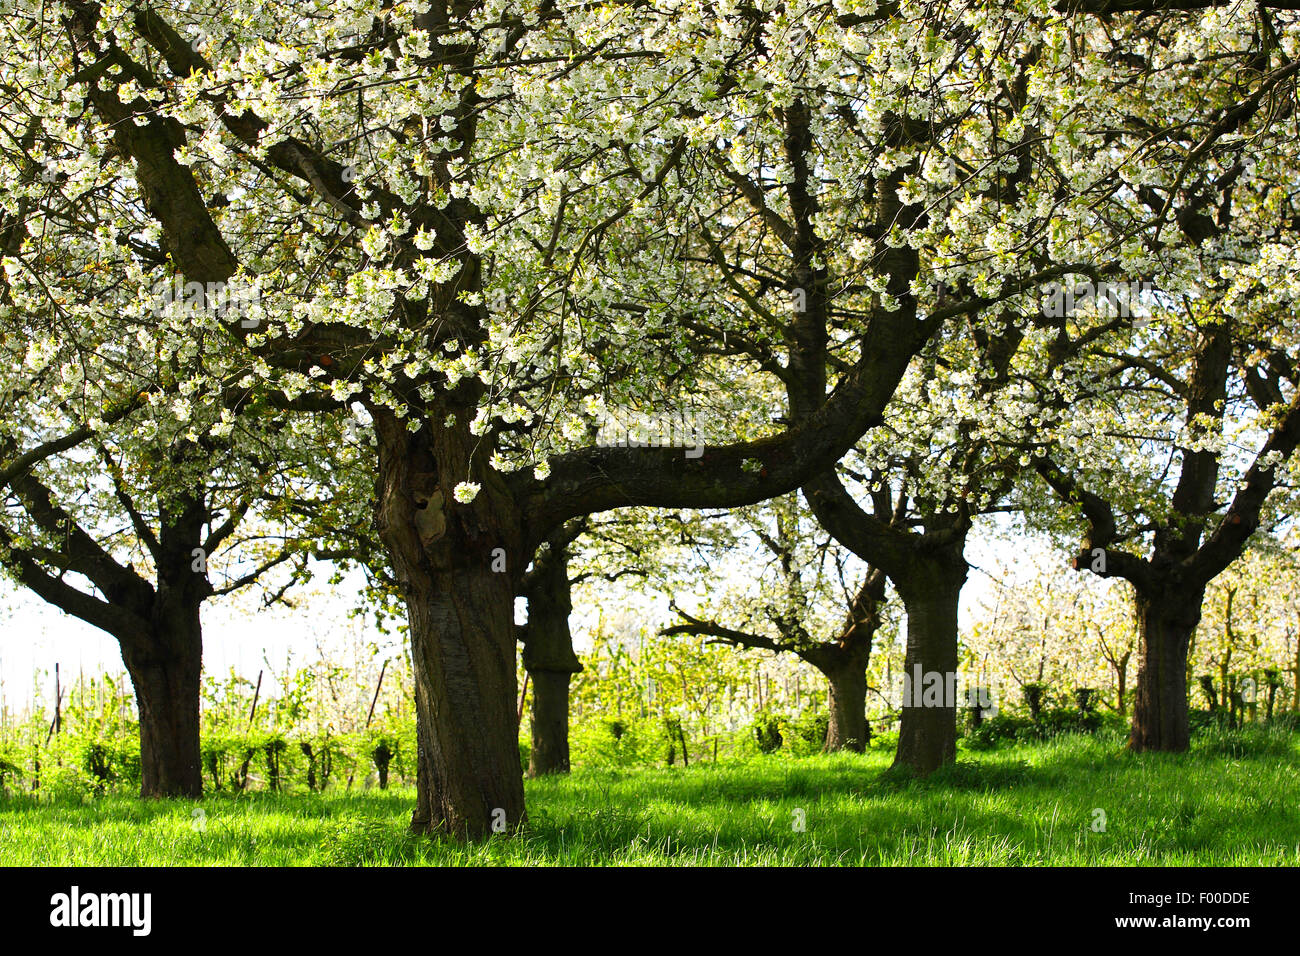 apple tree (Malus domestica), flowering apple trees, Belgium, Haspengouw Stock Photo